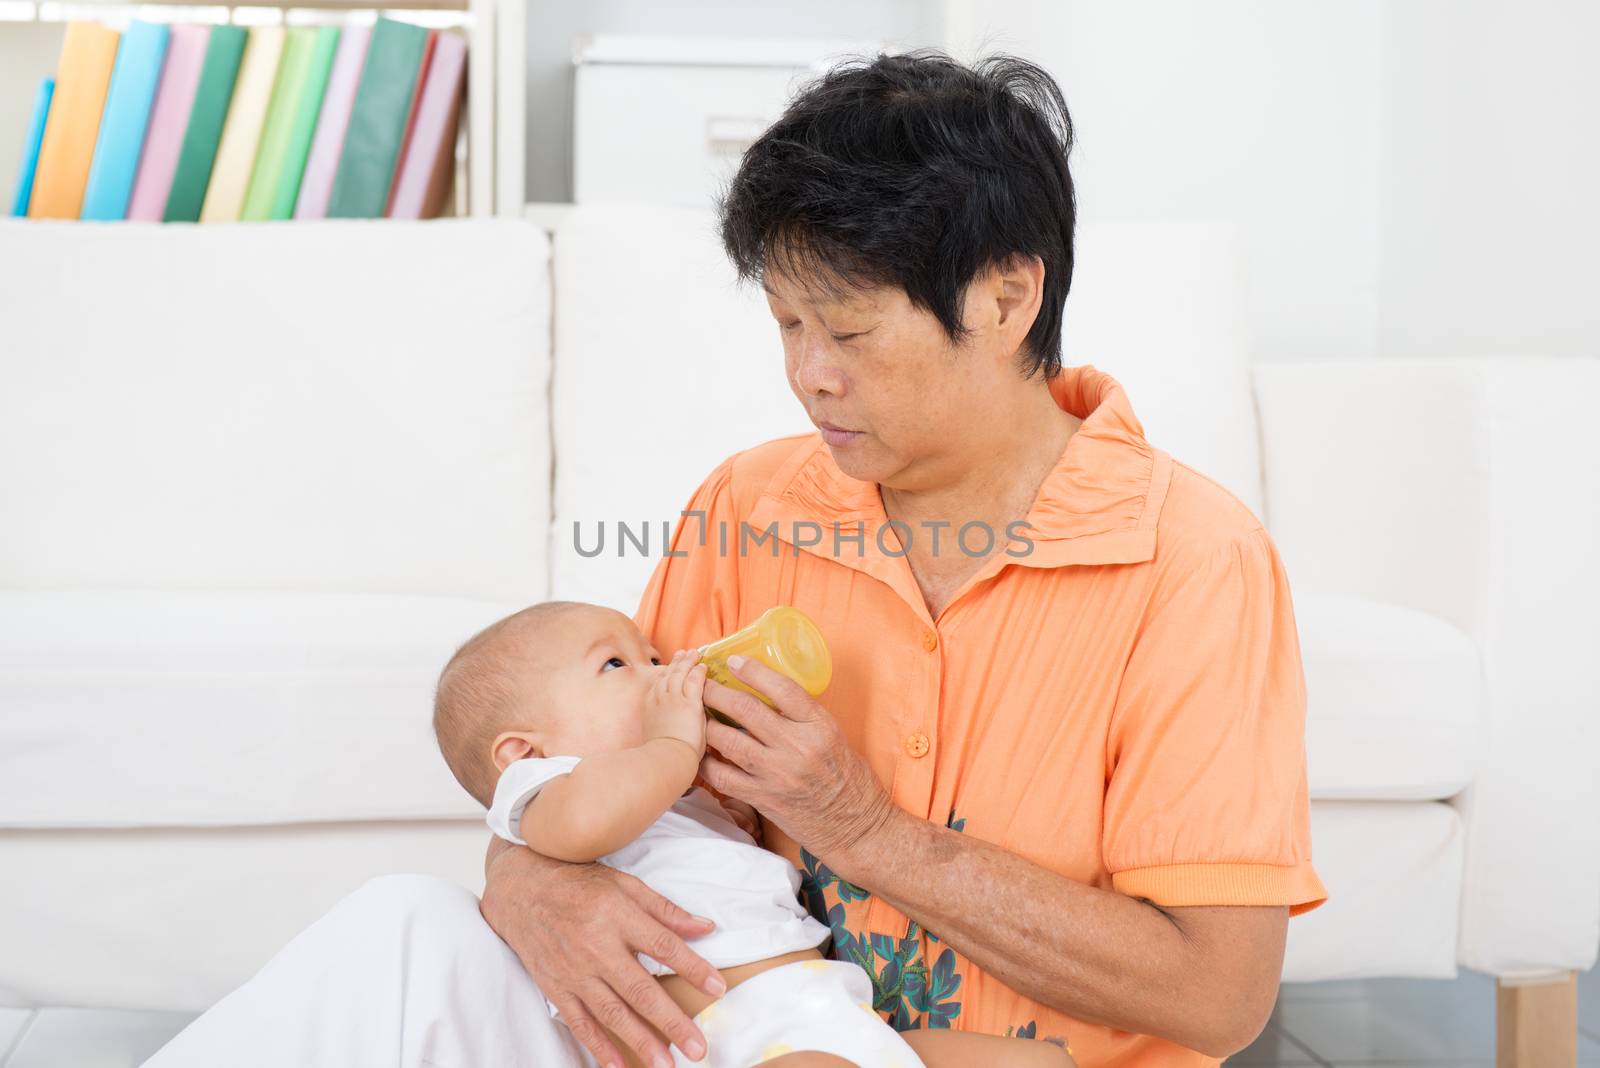 Nanny bottle feeding baby by szefei